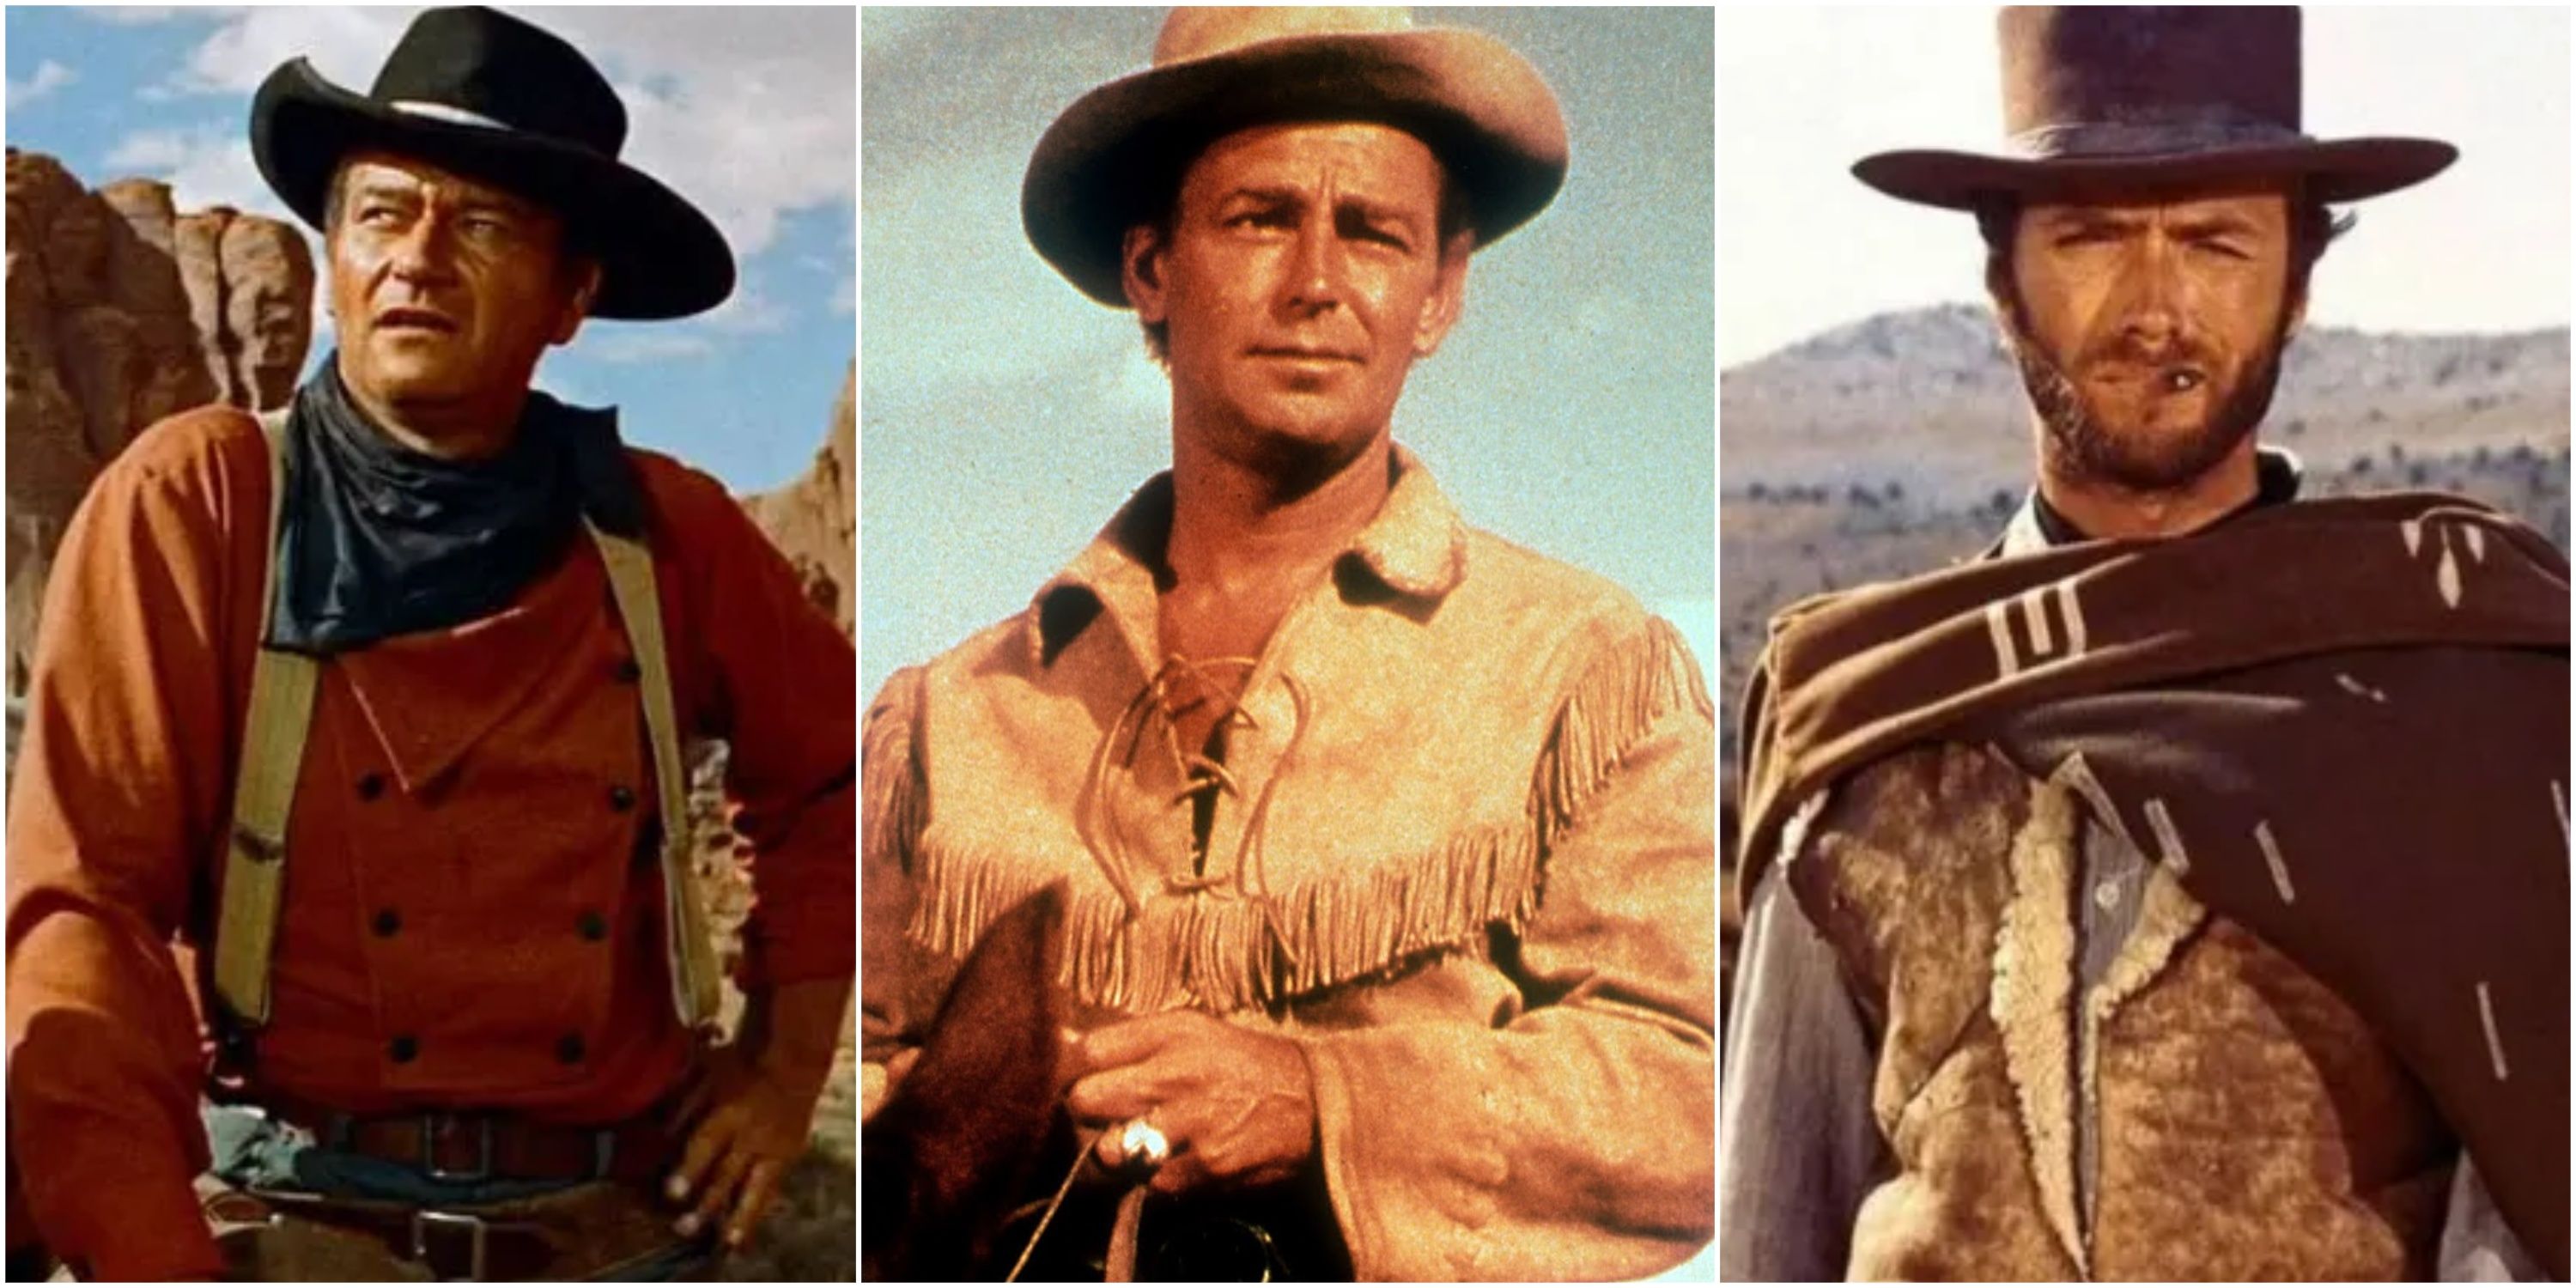 Split image John Wayne in the Searchers, Alan Ladd in Shane, Clint Eastwood in A Fistful of Dollars